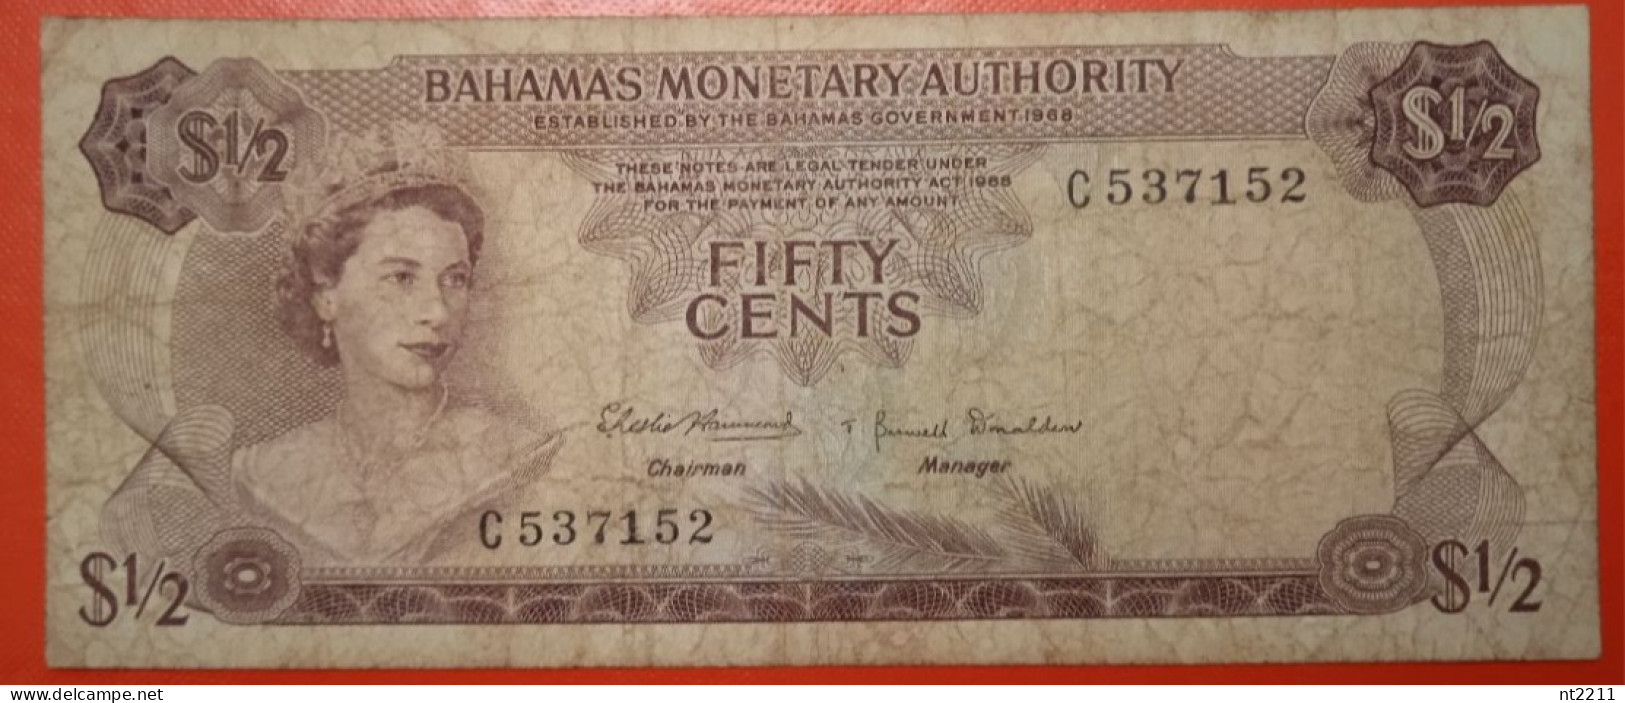 Banknote 1/2 Dollar Bahamas 1968 - Bahamas